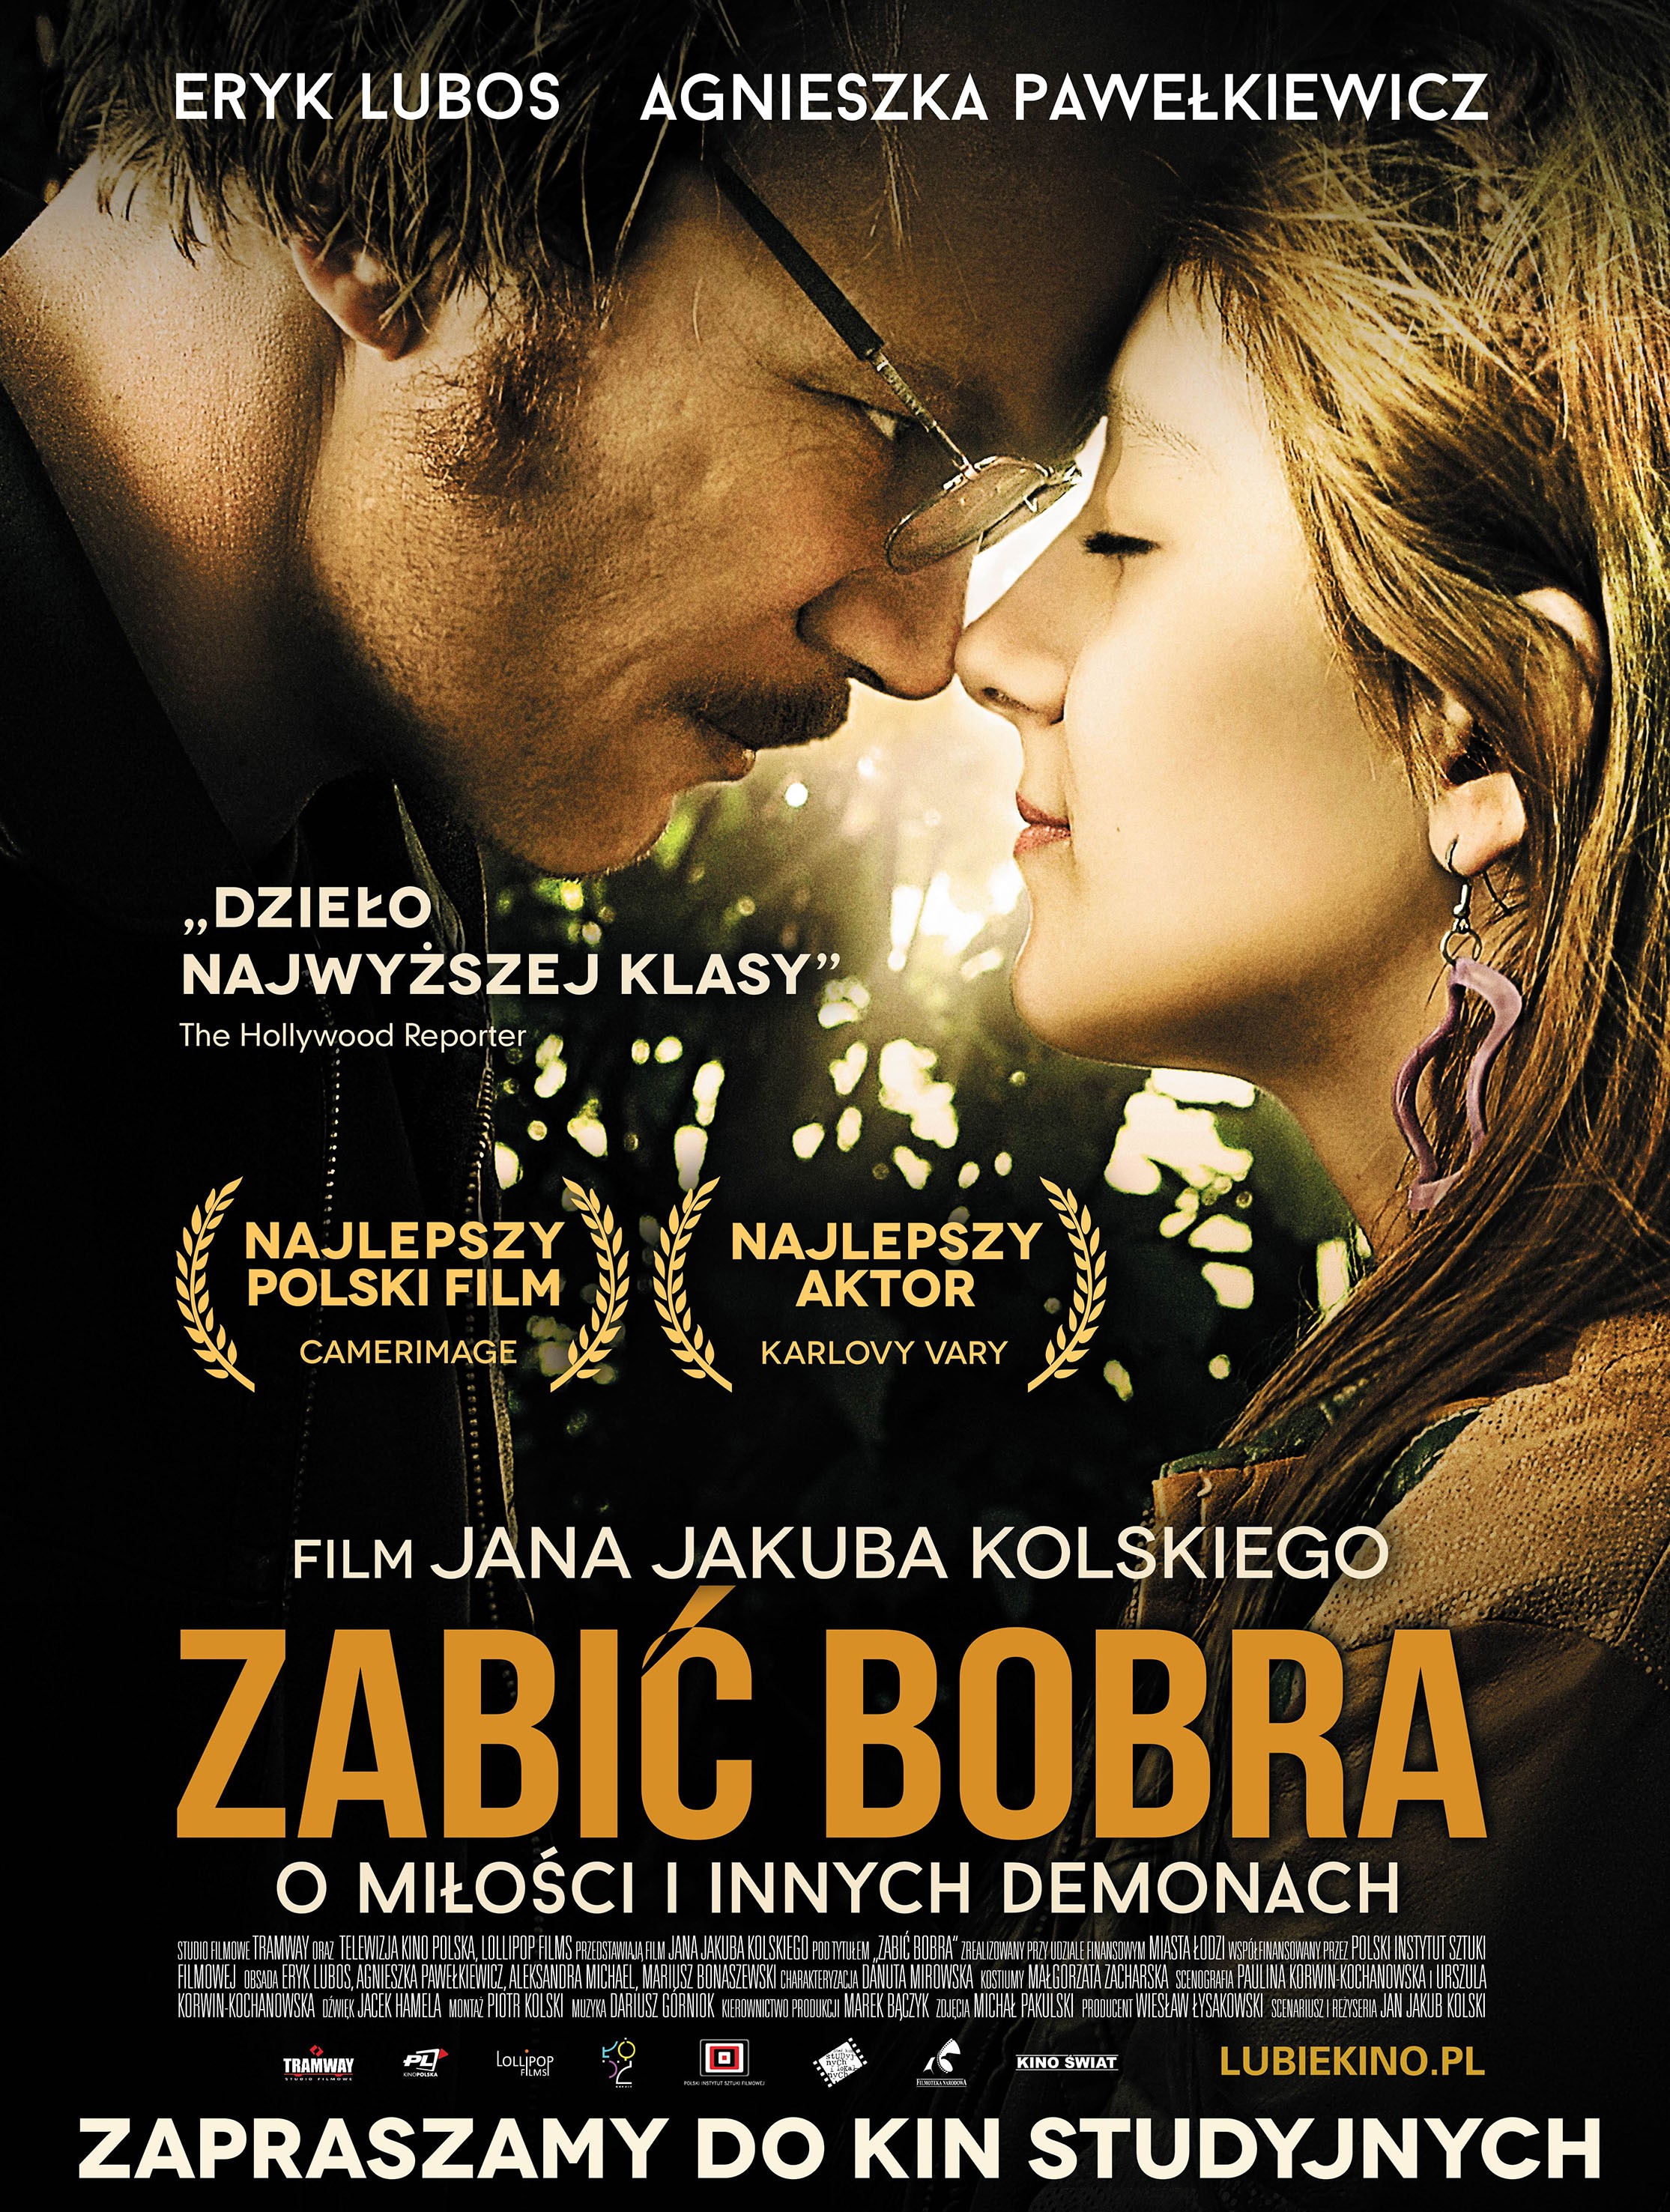 Mega Sized Movie Poster Image for Zabic bobra (#2 of 2)